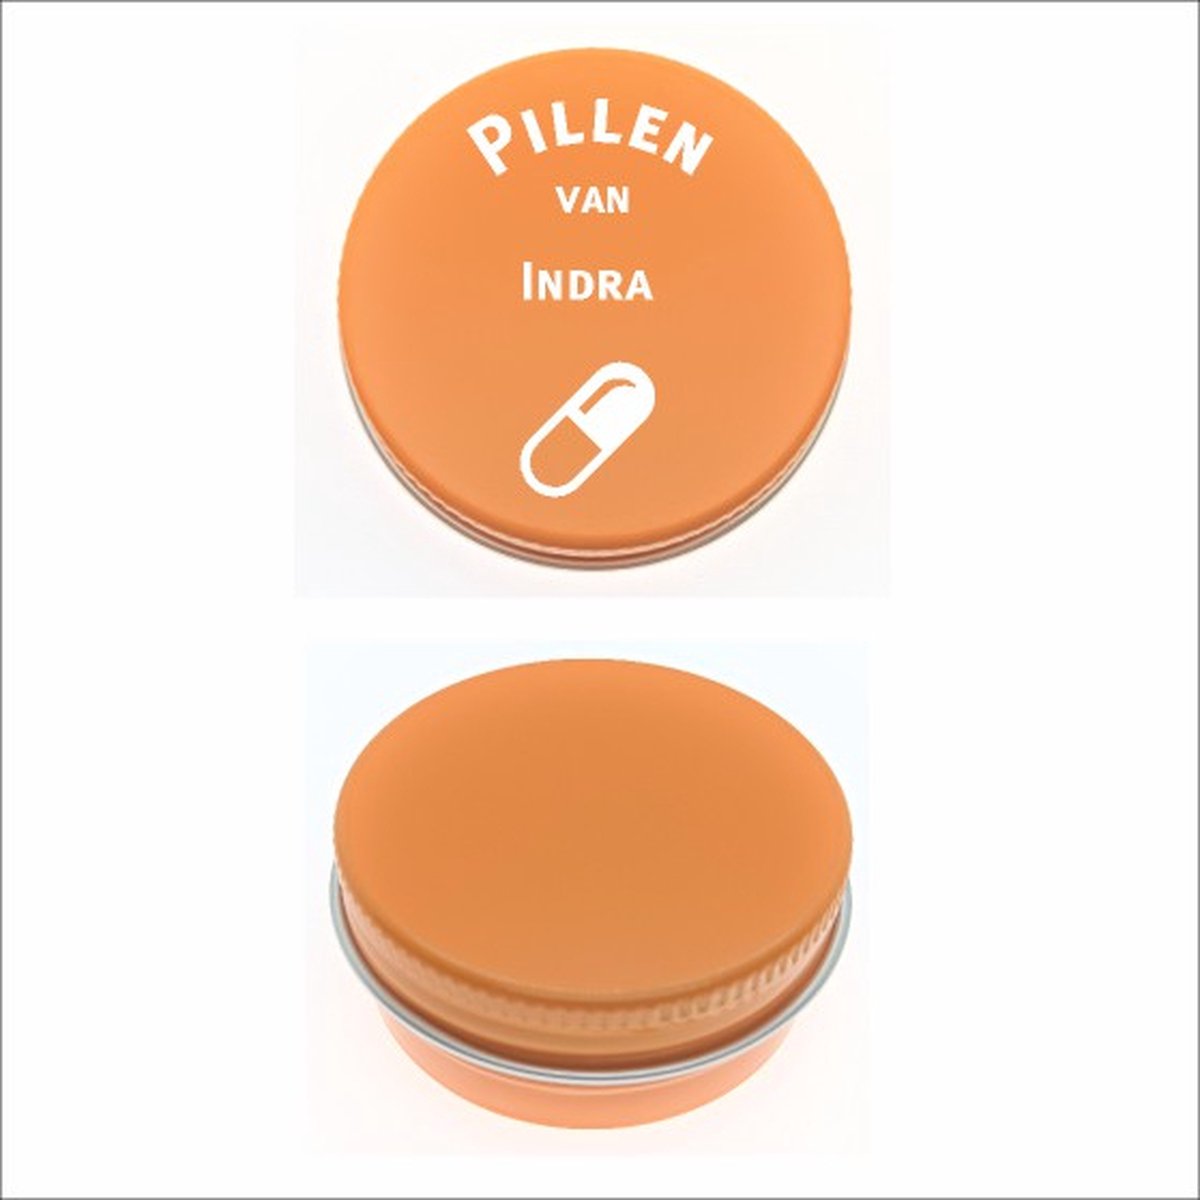 Pillen Blikje Met Naam Gravering - Indra